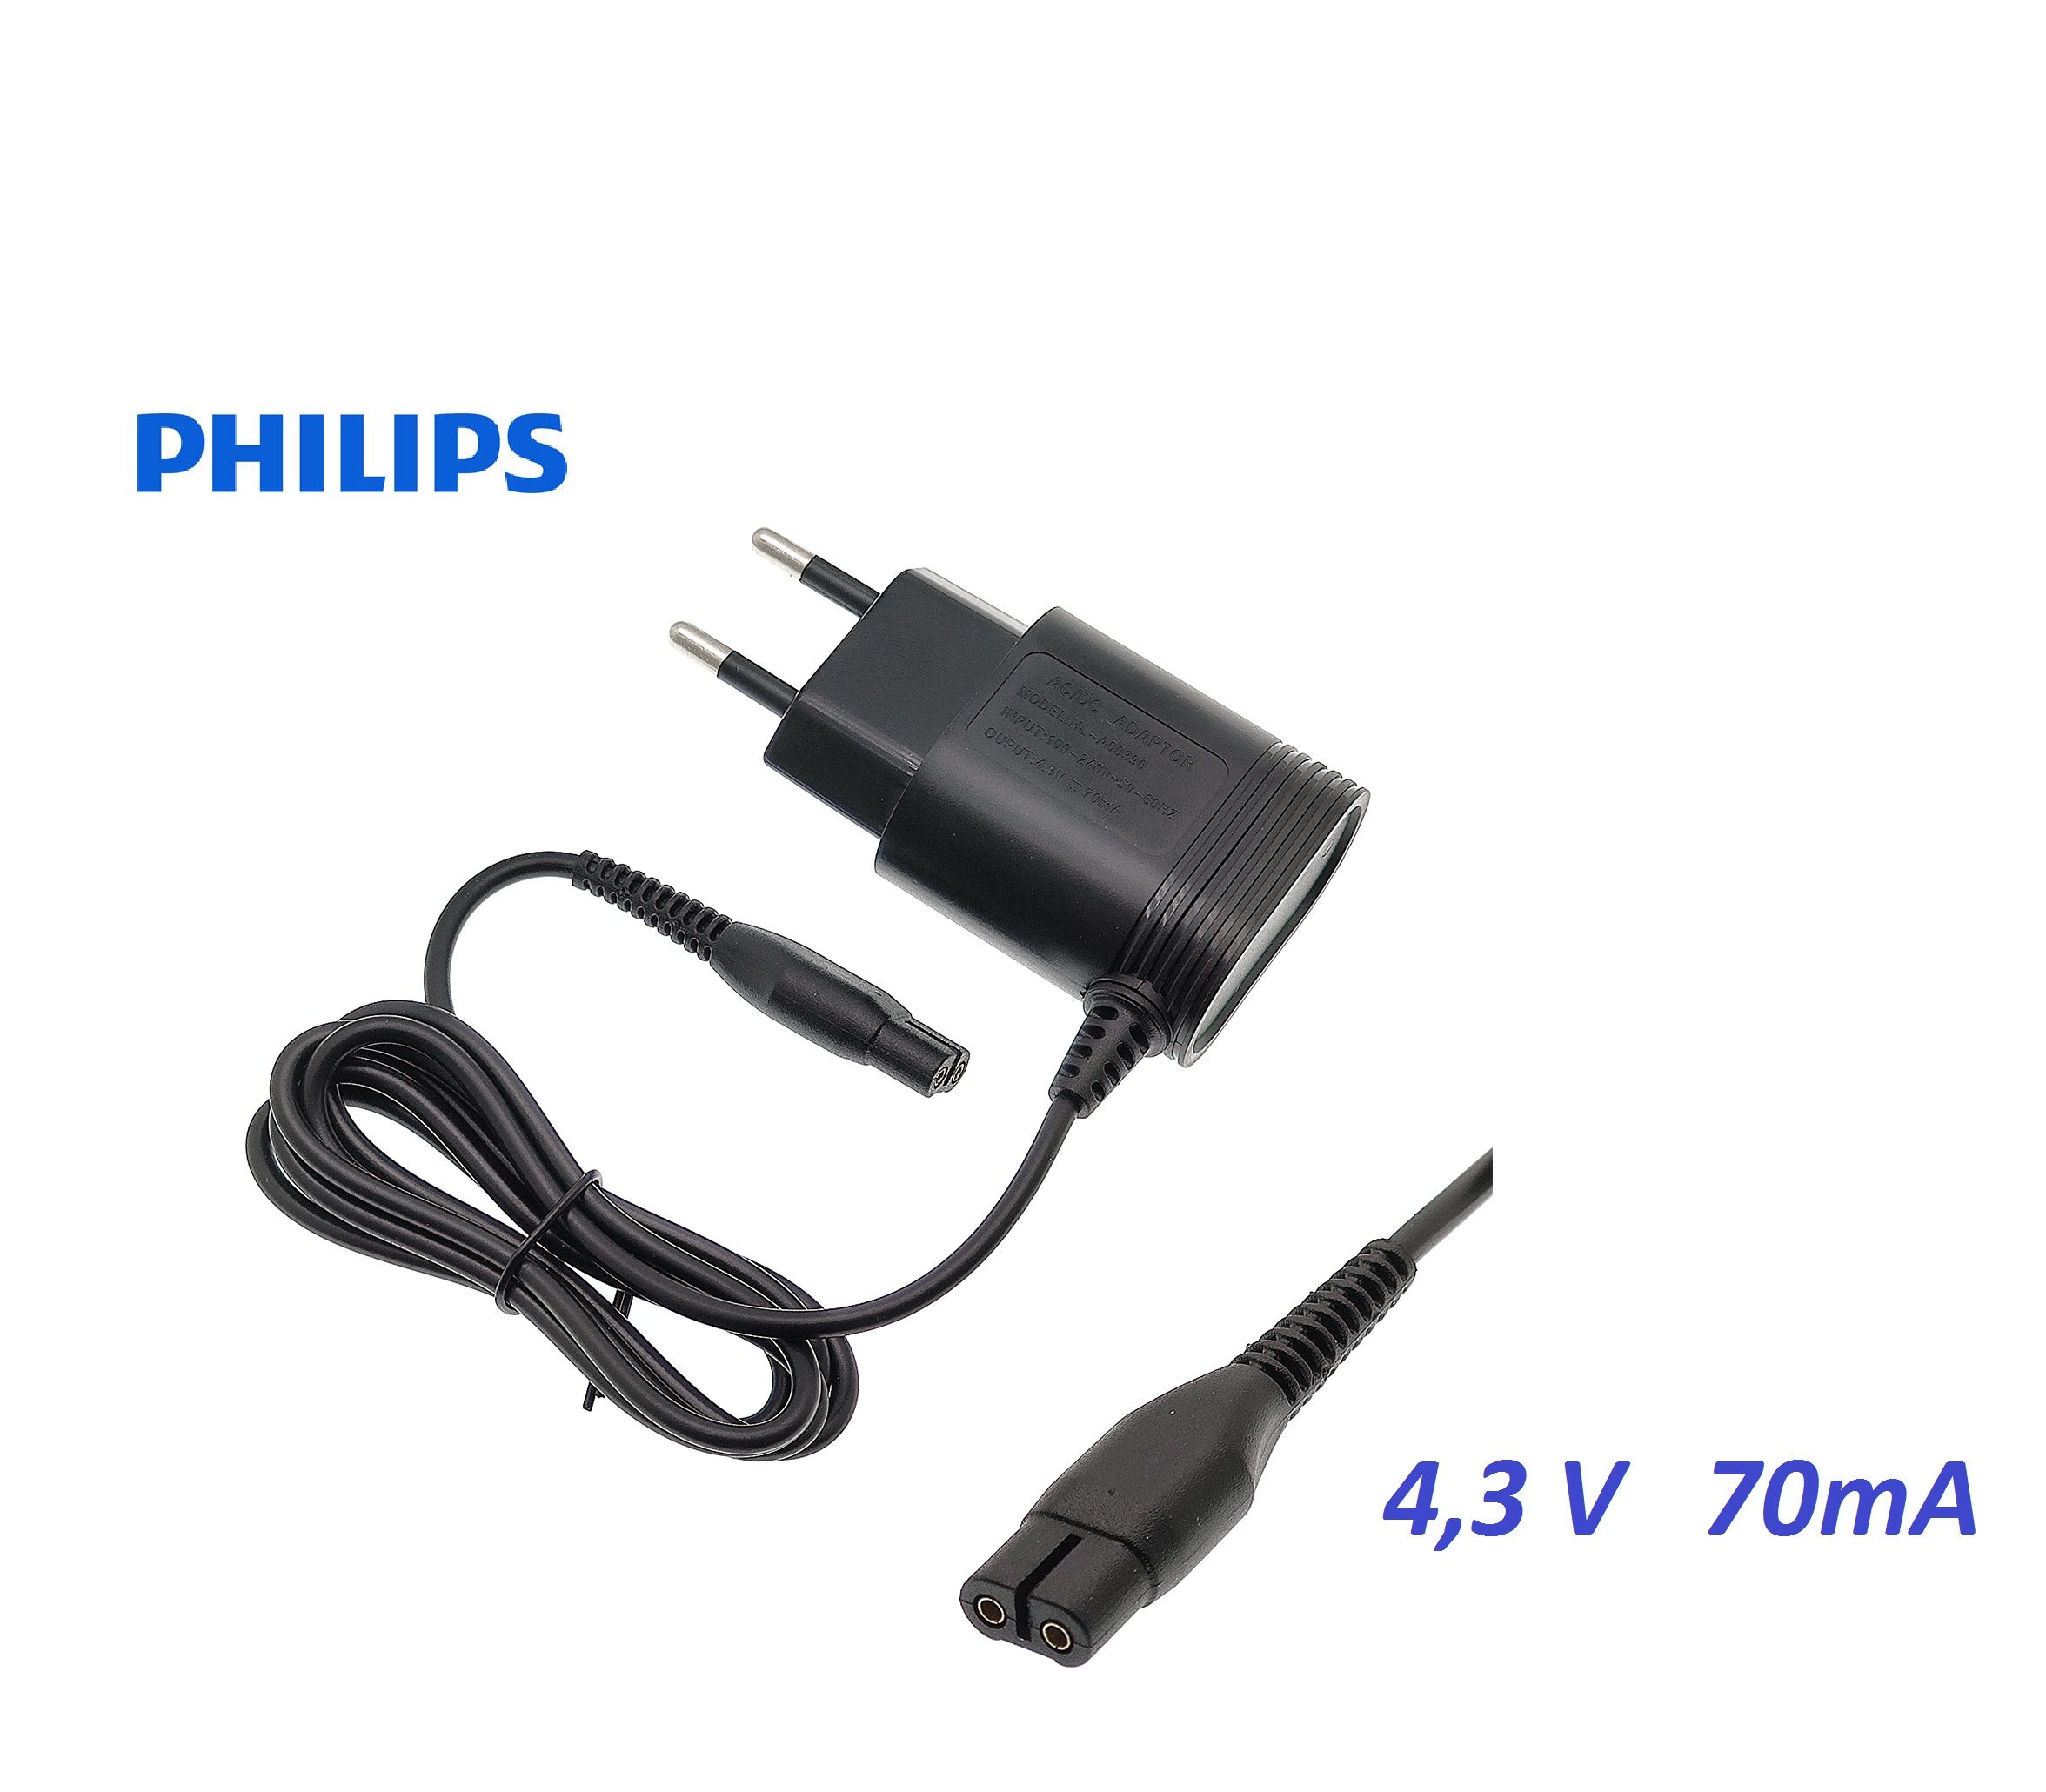 Philips 2000 series xb2042 01